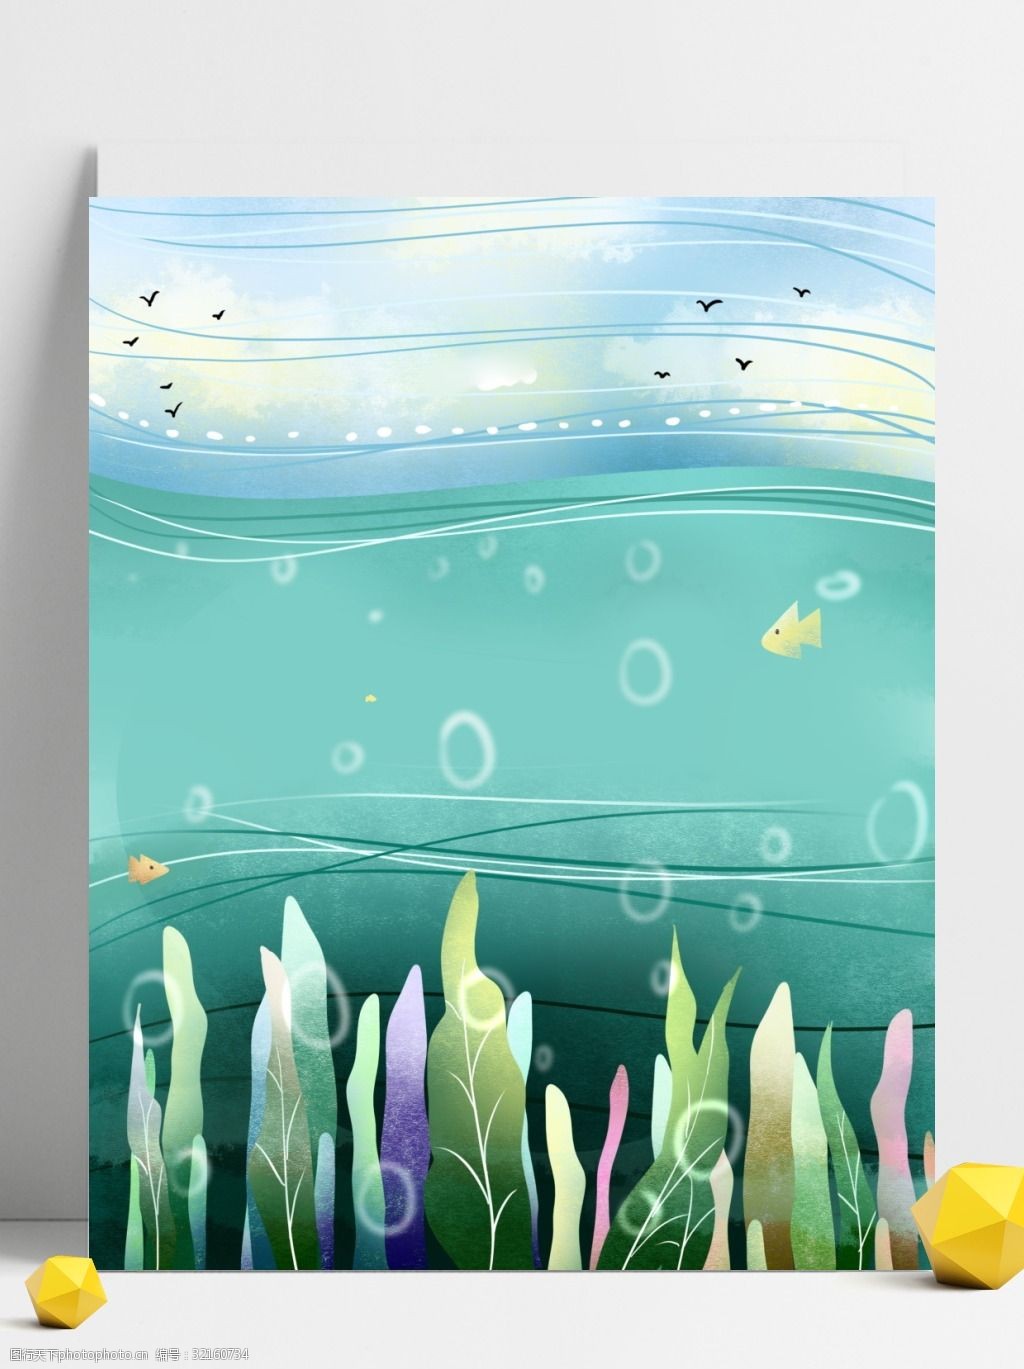 关键词:卡通手绘海洋风景插画背景 大海 海洋 广告背景 通用背景 背景